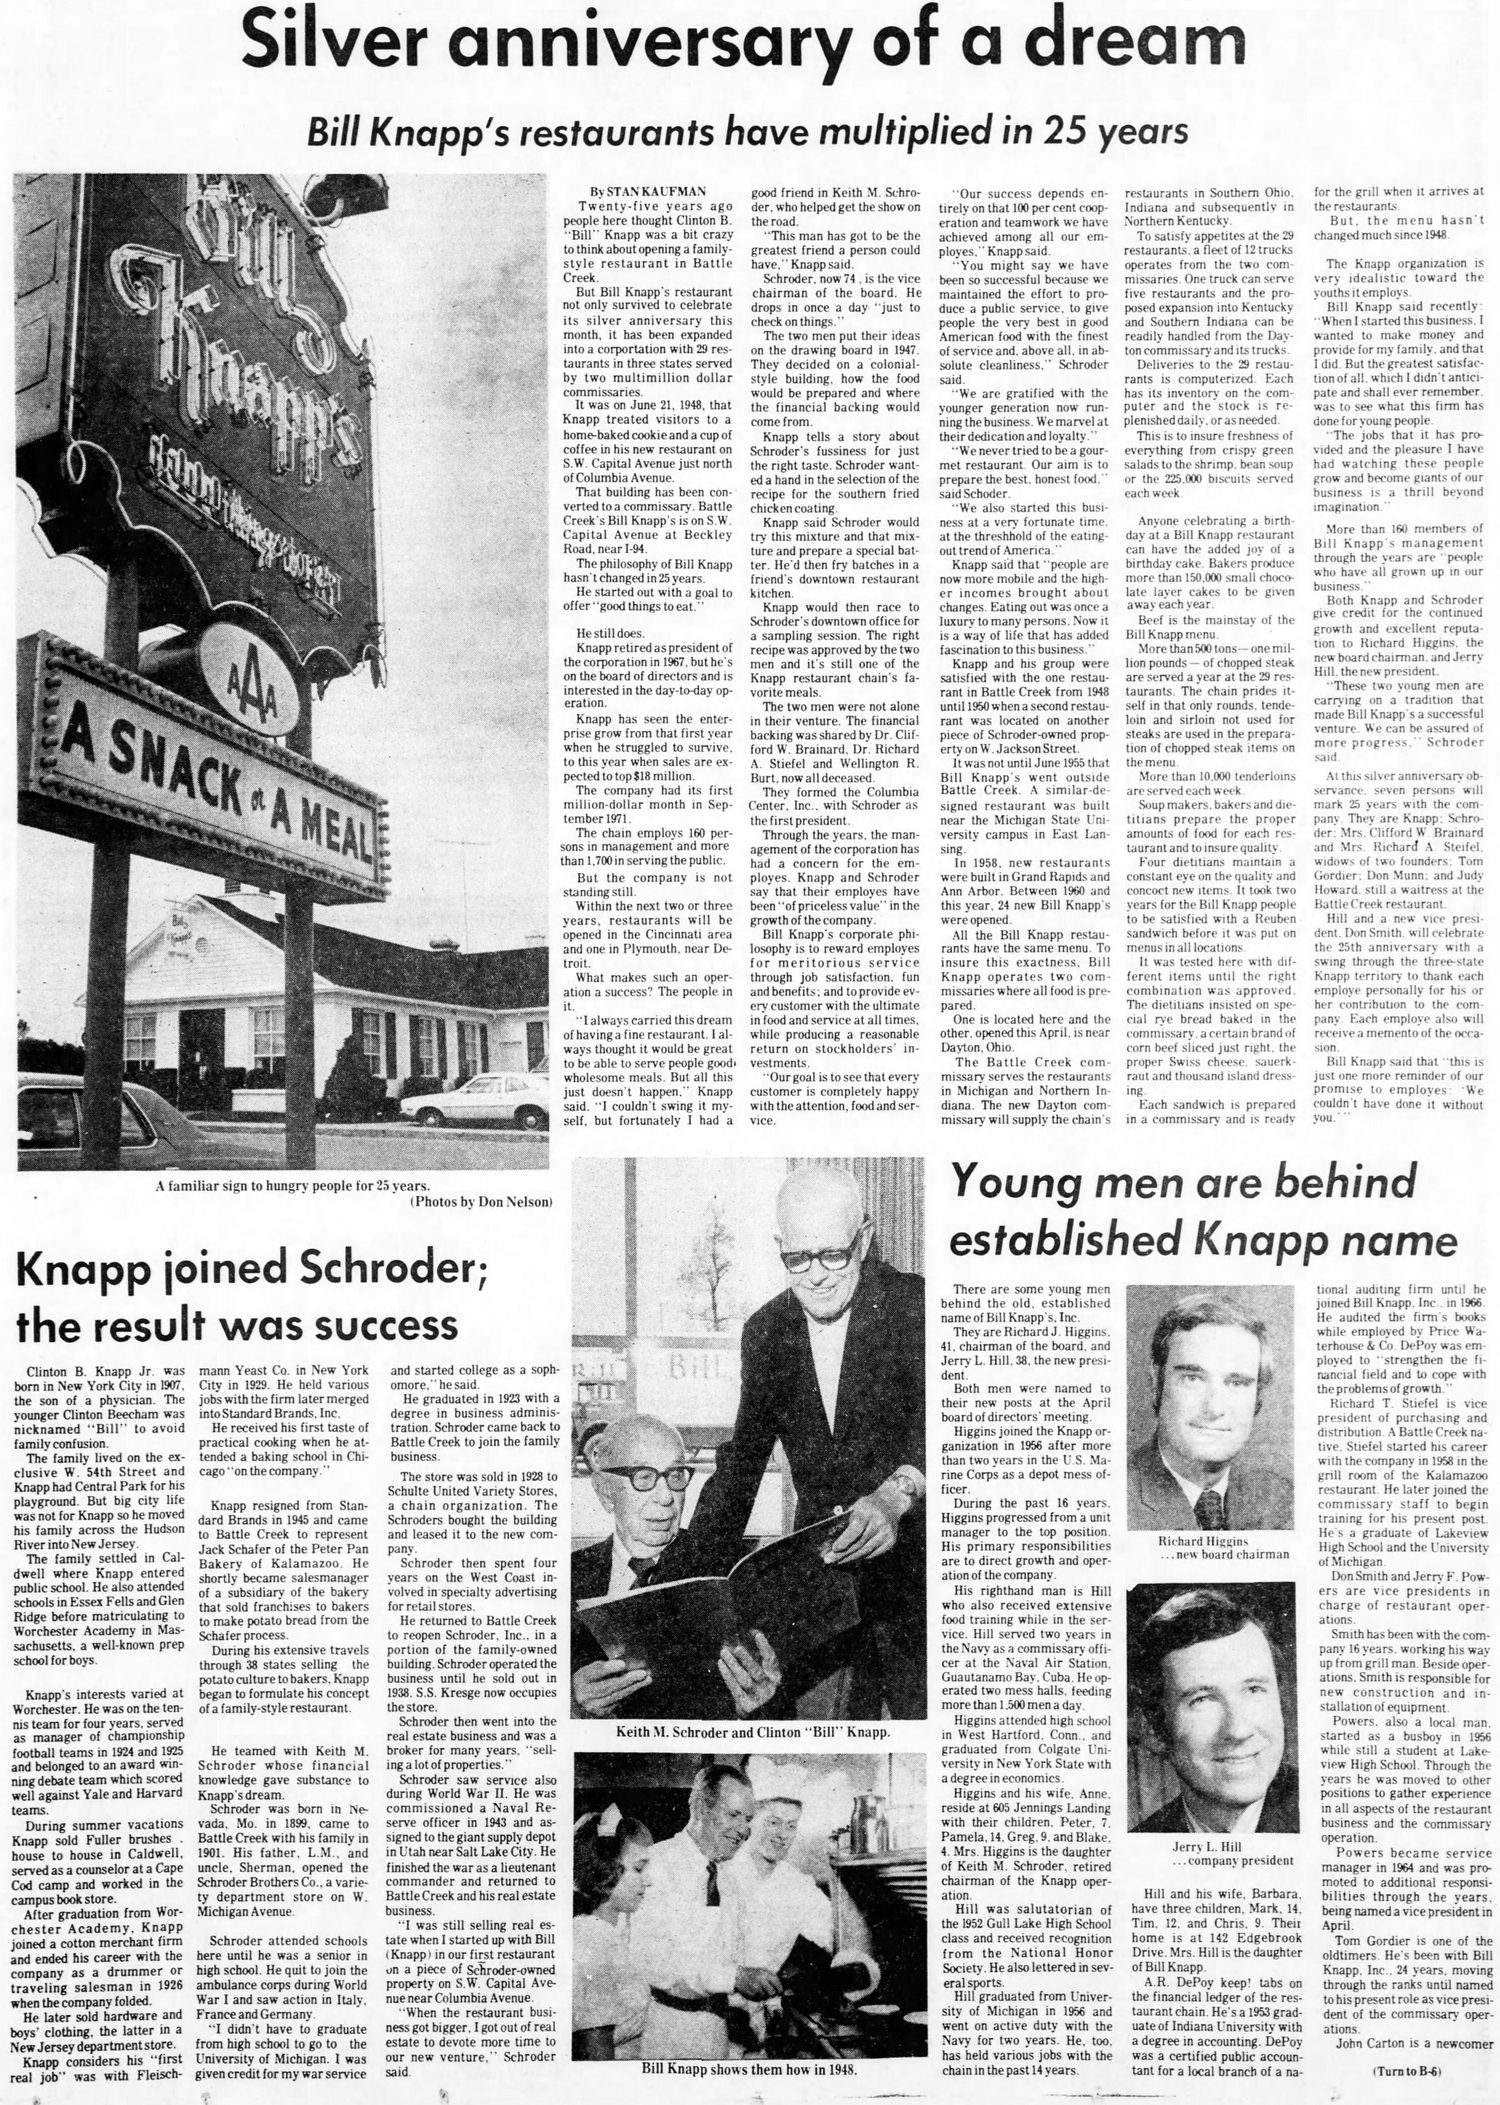 Bill Knapps - Jun 24 1973 Feature Article (newer photo)